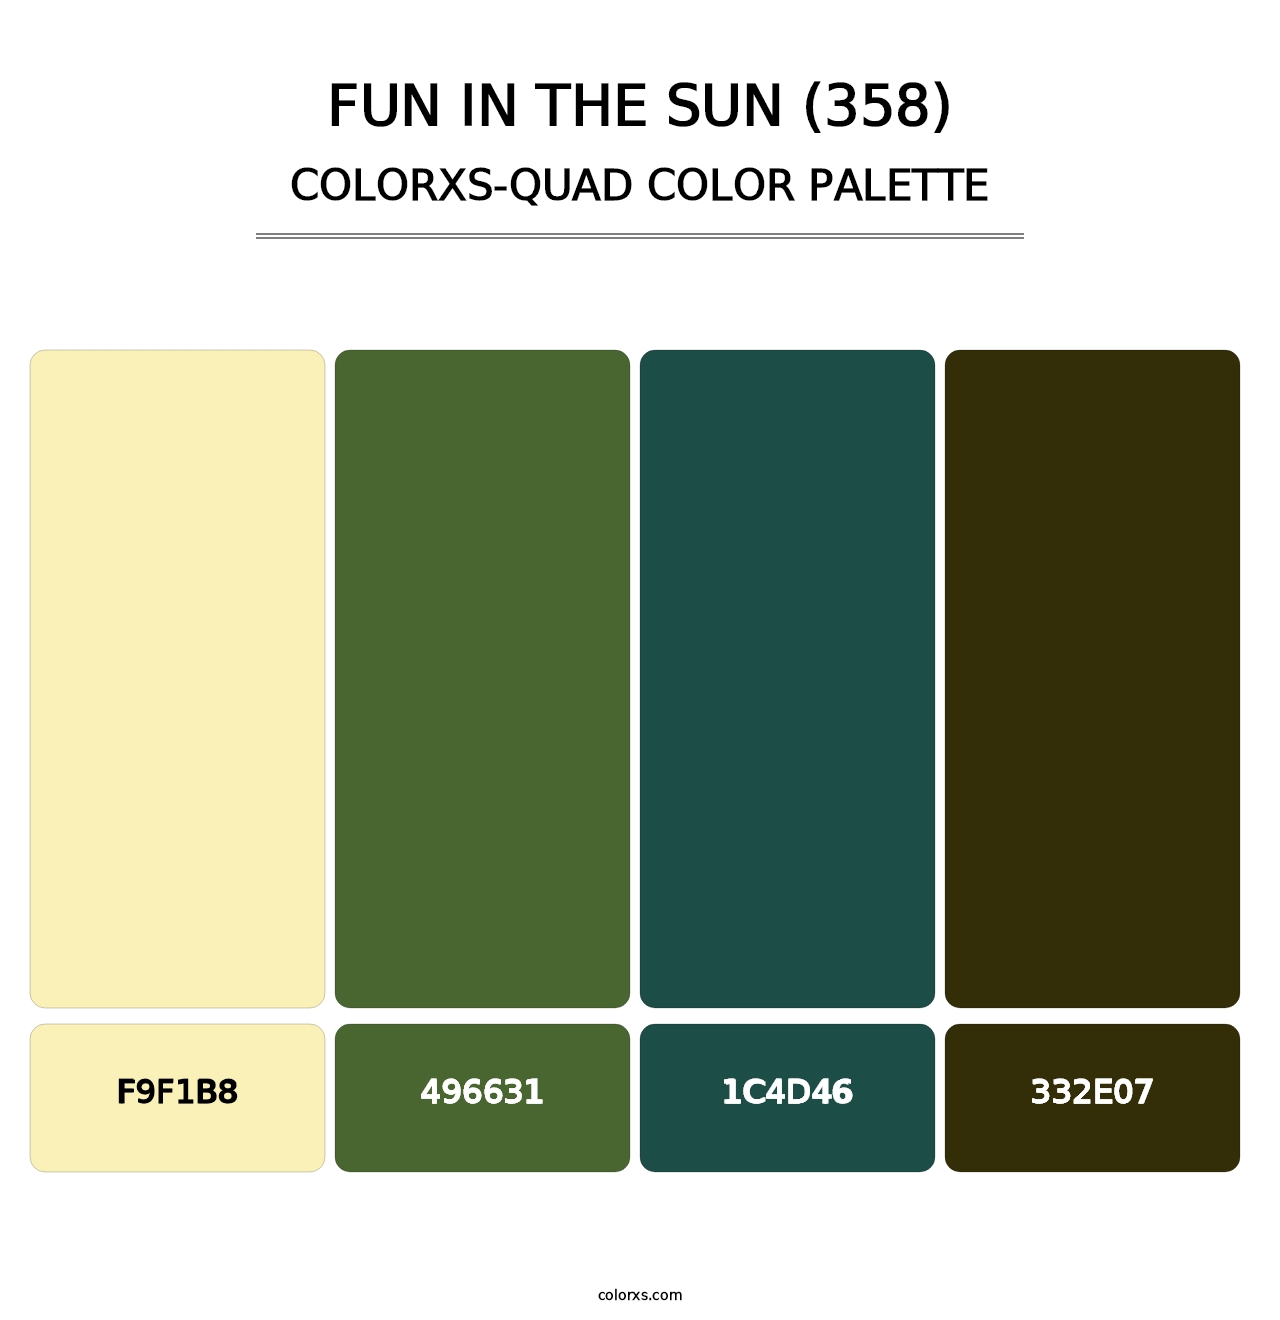 Fun in the Sun (358) - Colorxs Quad Palette